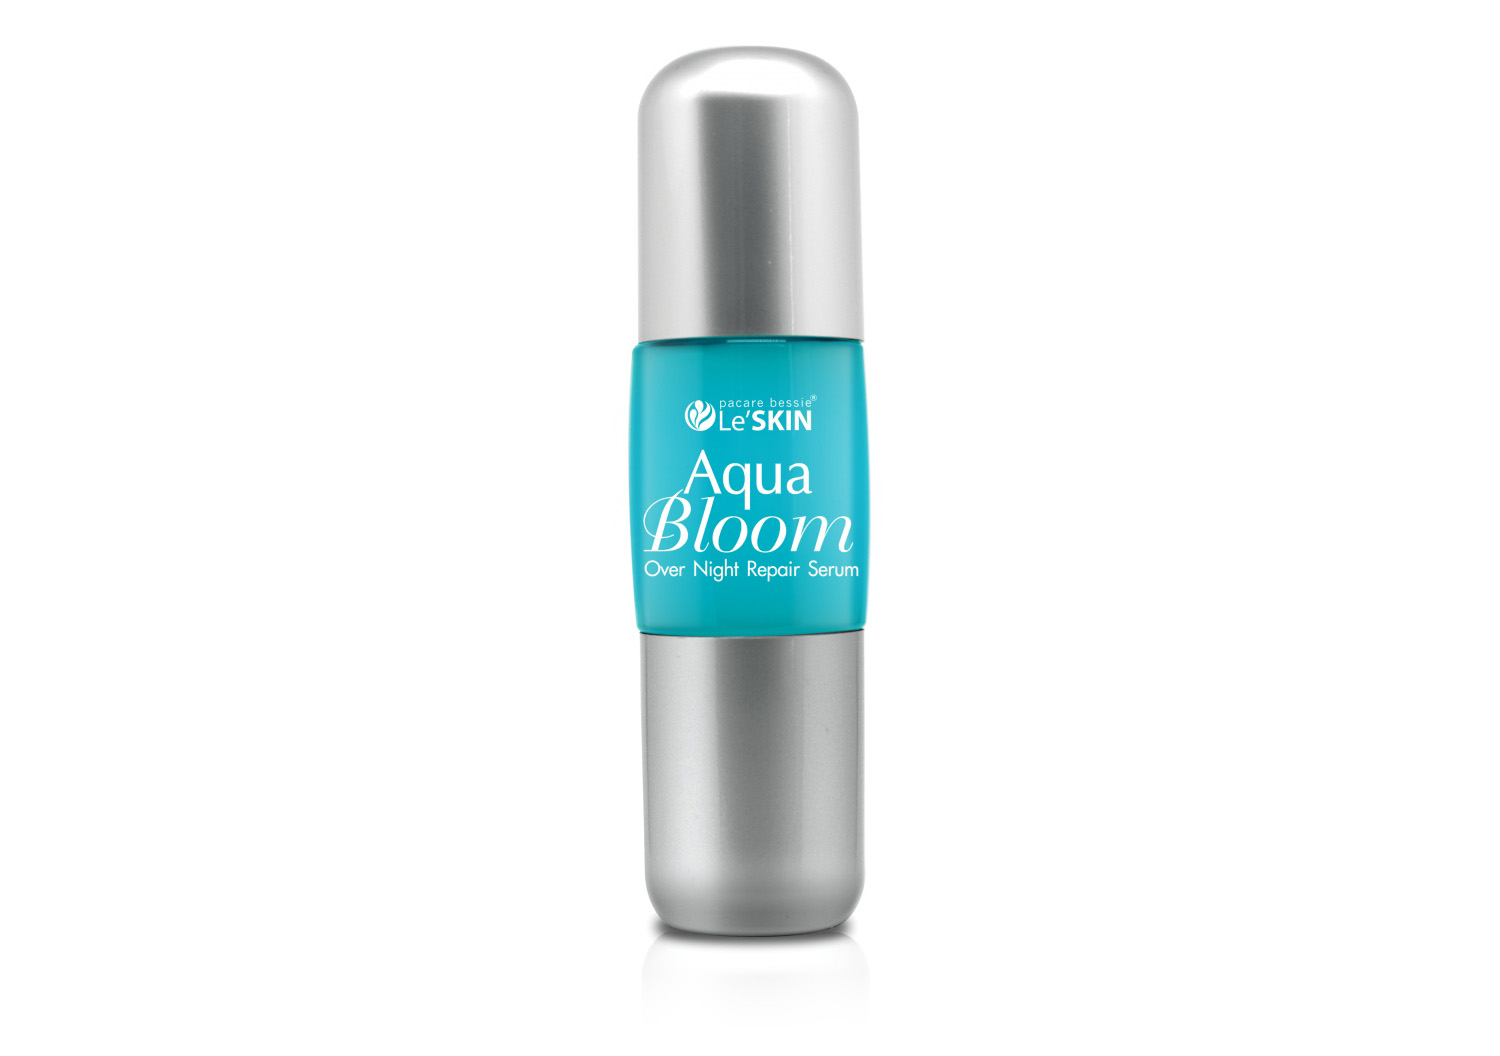 Ночная сыворотка для лица из Тайланда Aqua Bloom Over Night Repair Serum Le'Skin 50 мл. КУПИТЬ ТАЙСКУЮ СЫВОРОТКУ ДЛЯ ЛИЦА Le'Skin